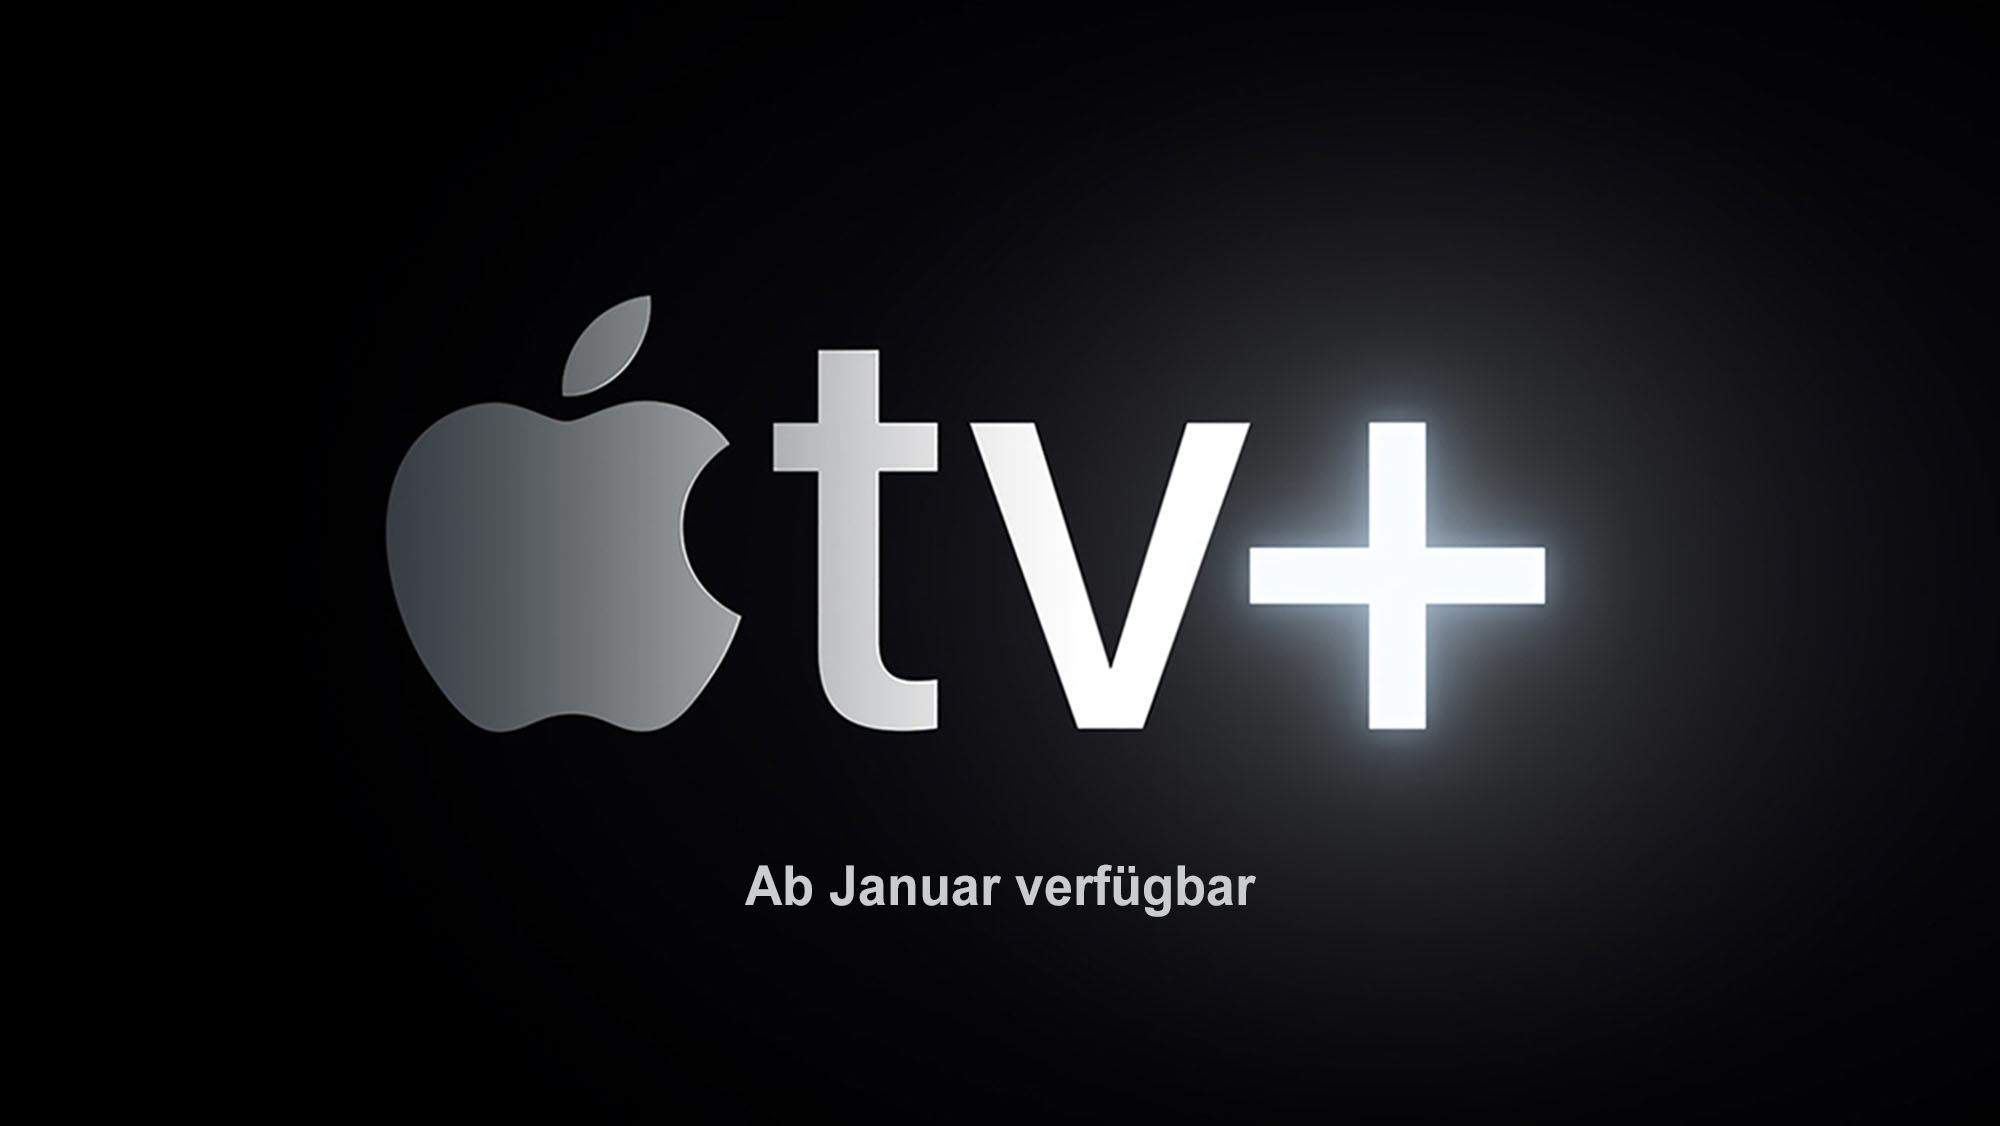 Apple TV+: Die neuen Serien(-Staffeln) und Filme im Januar 2022